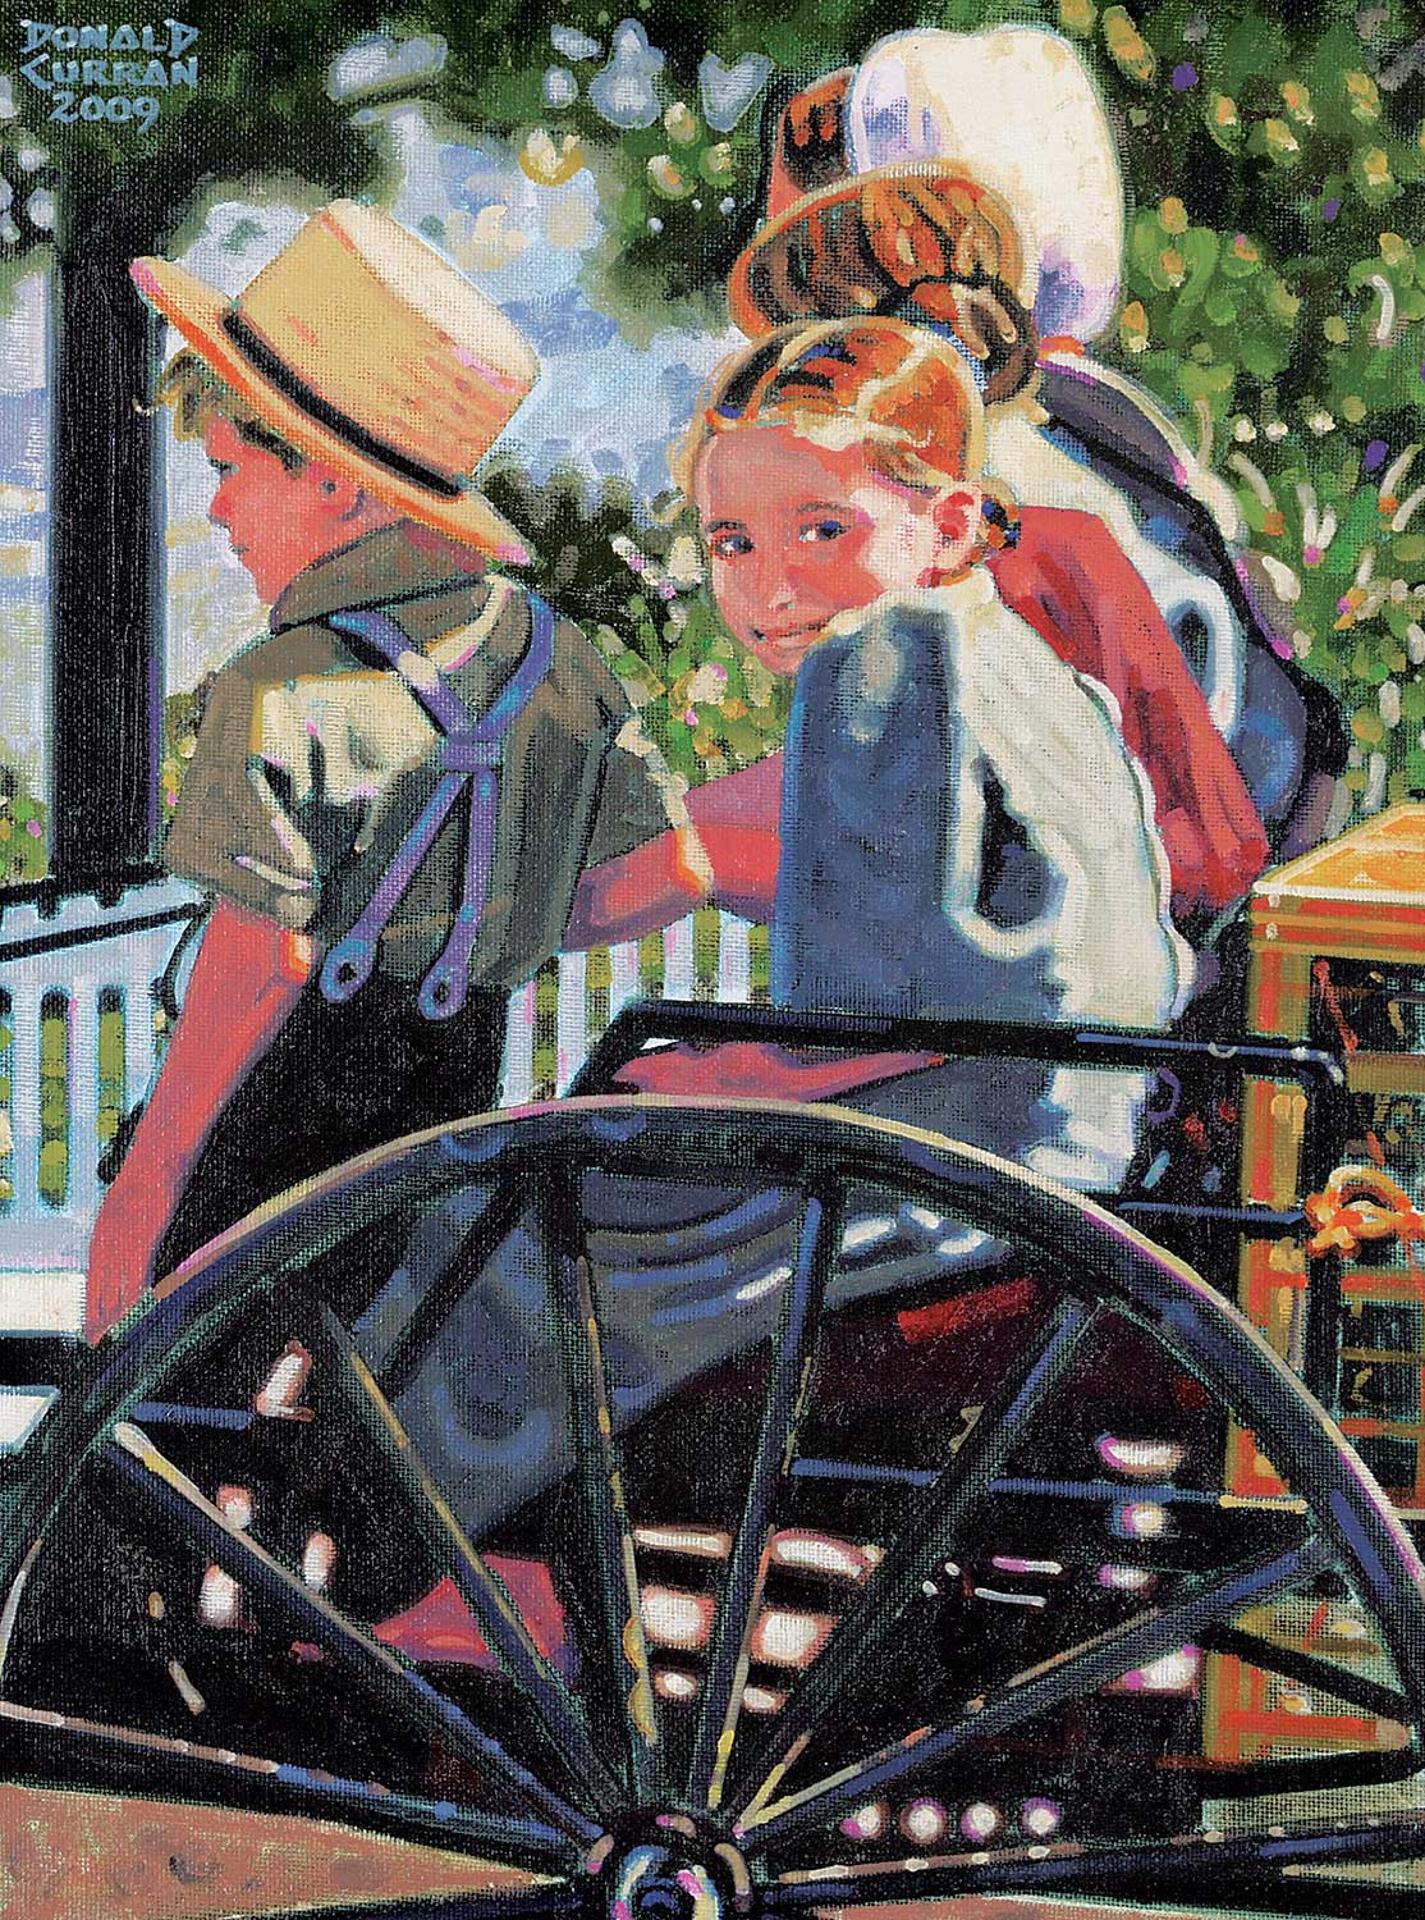 Donald Curran (1955) - Amish Children